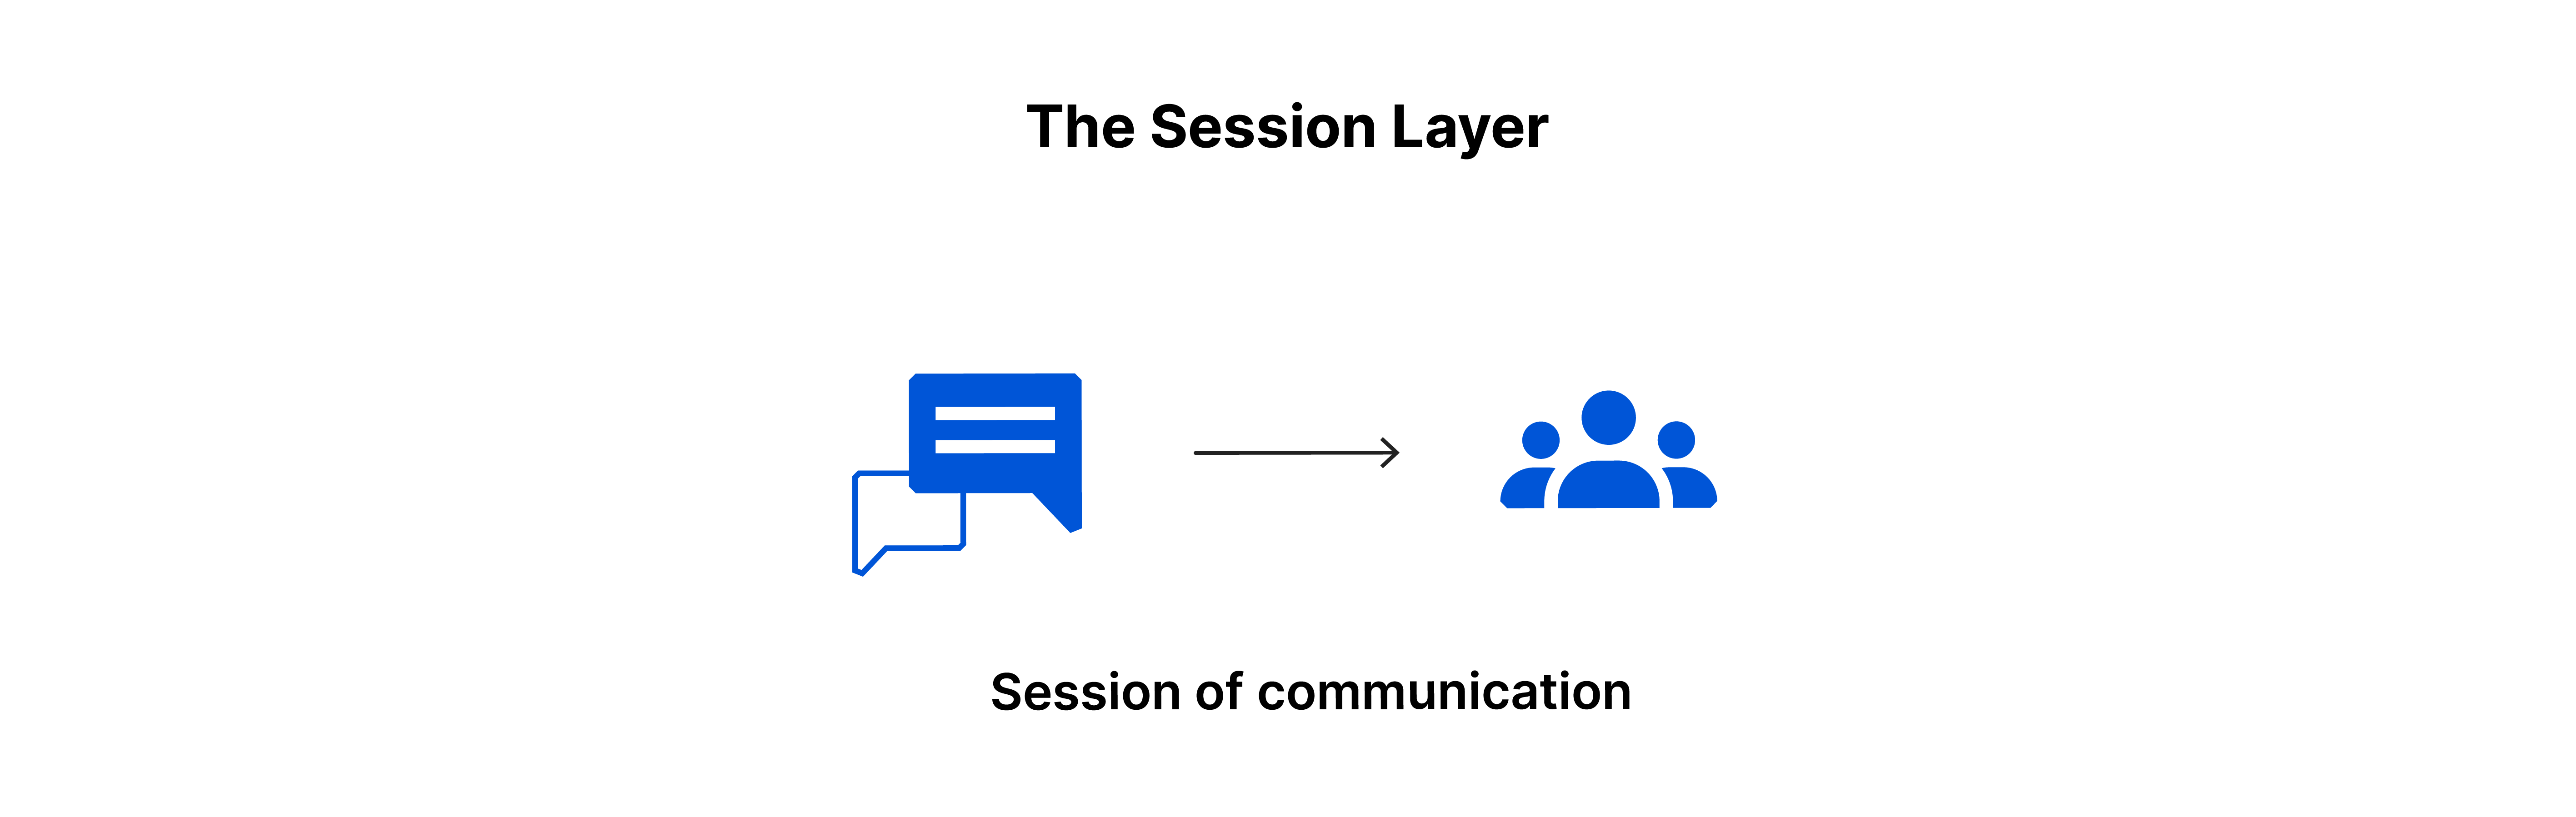 Die Sitzungsebene: Sitzung der Kommunikation